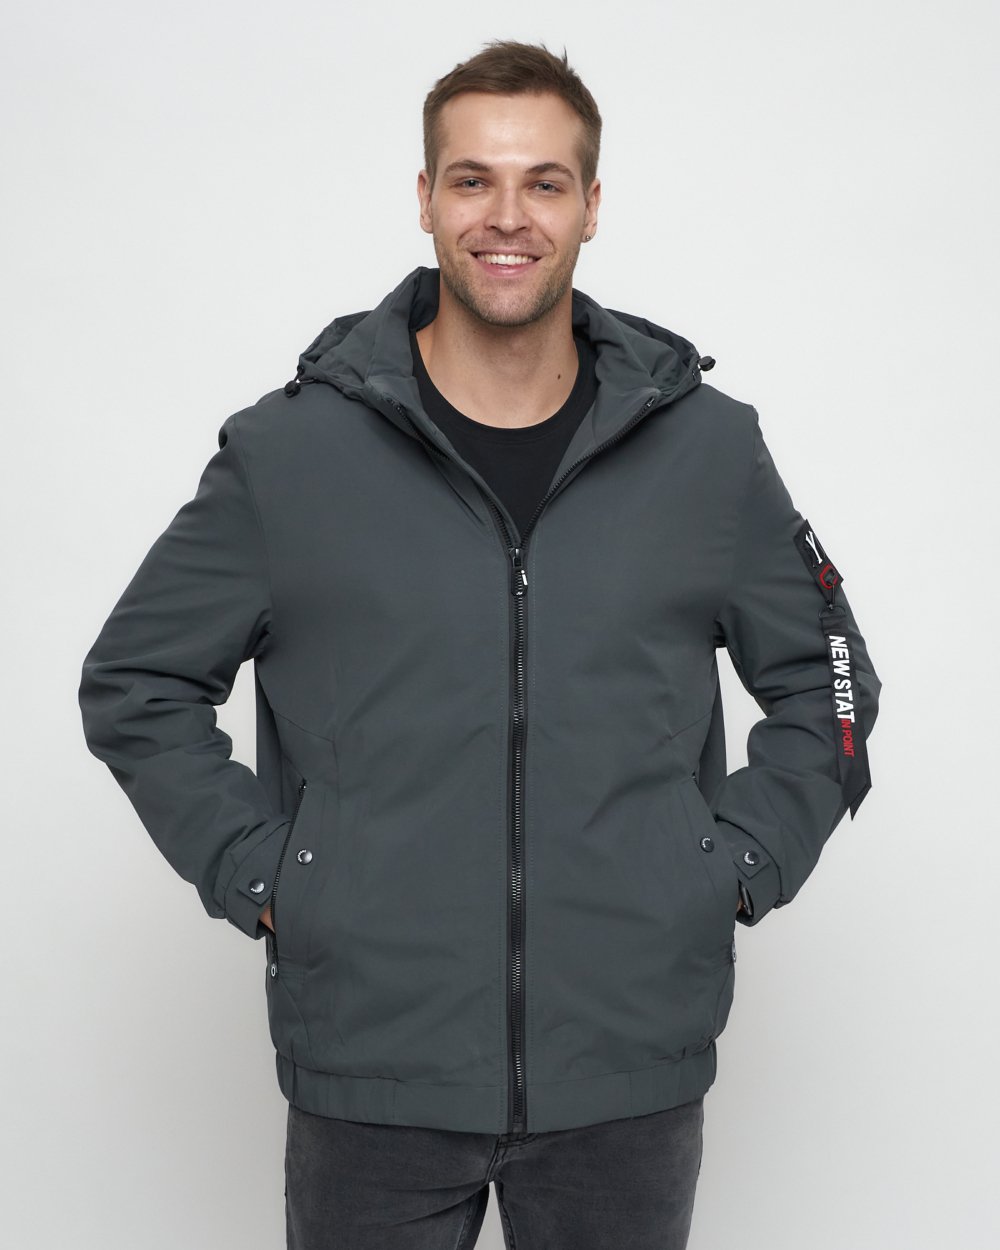 Купить куртку мужскую большого размера оптом от производителя недорого в Москве 88657Sr 1